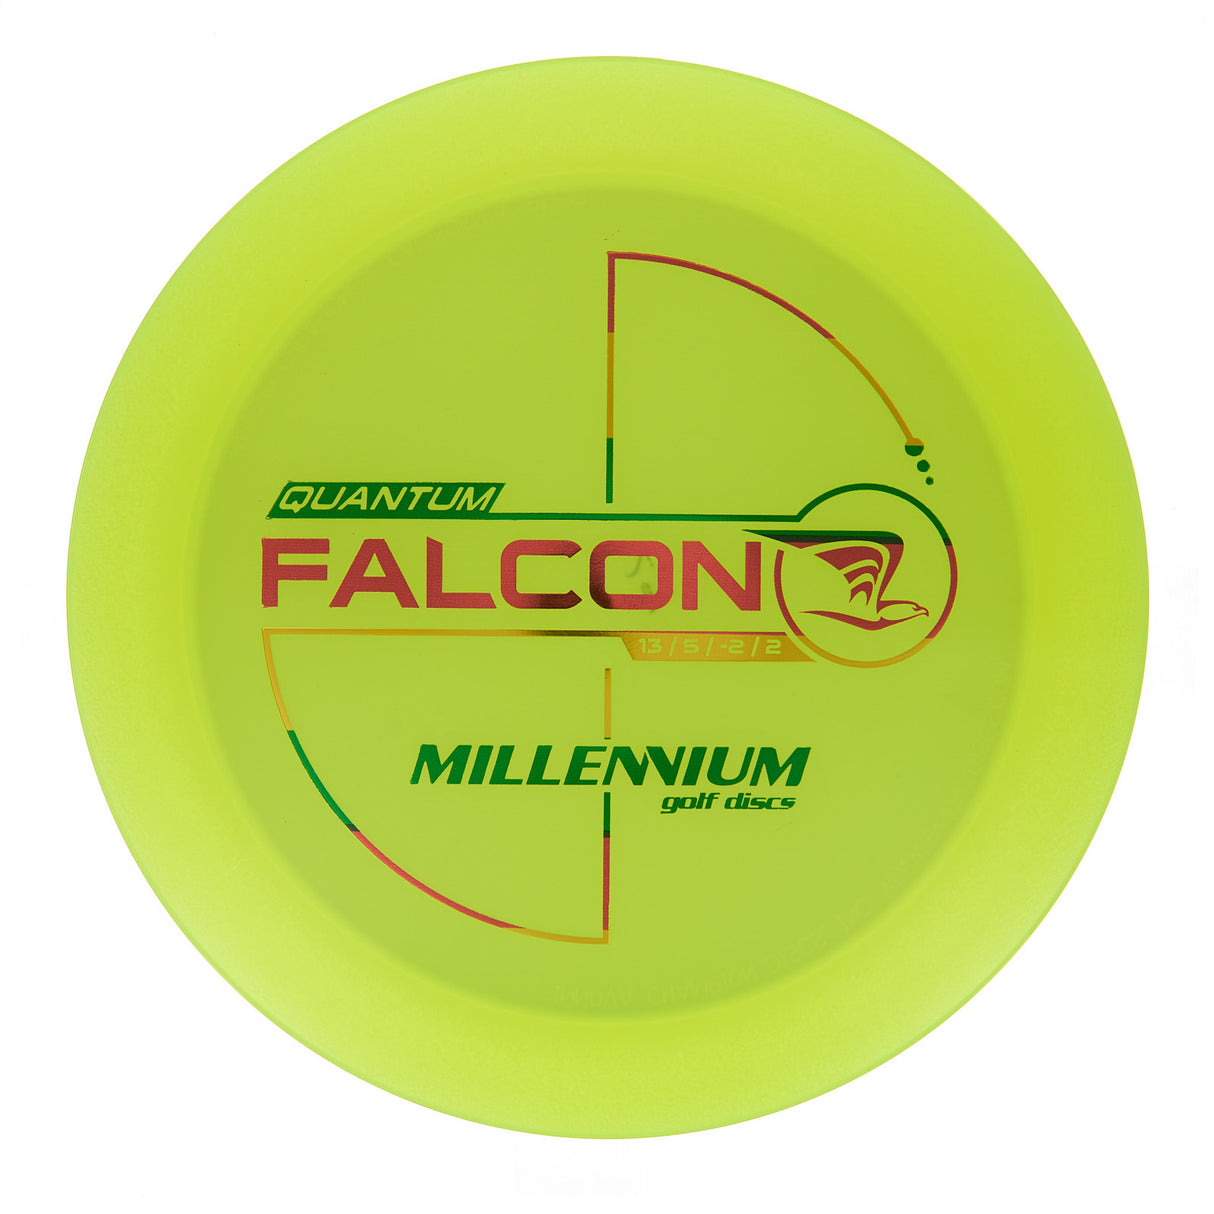 Millennium Falcon - Quantum 168g | Style 0001